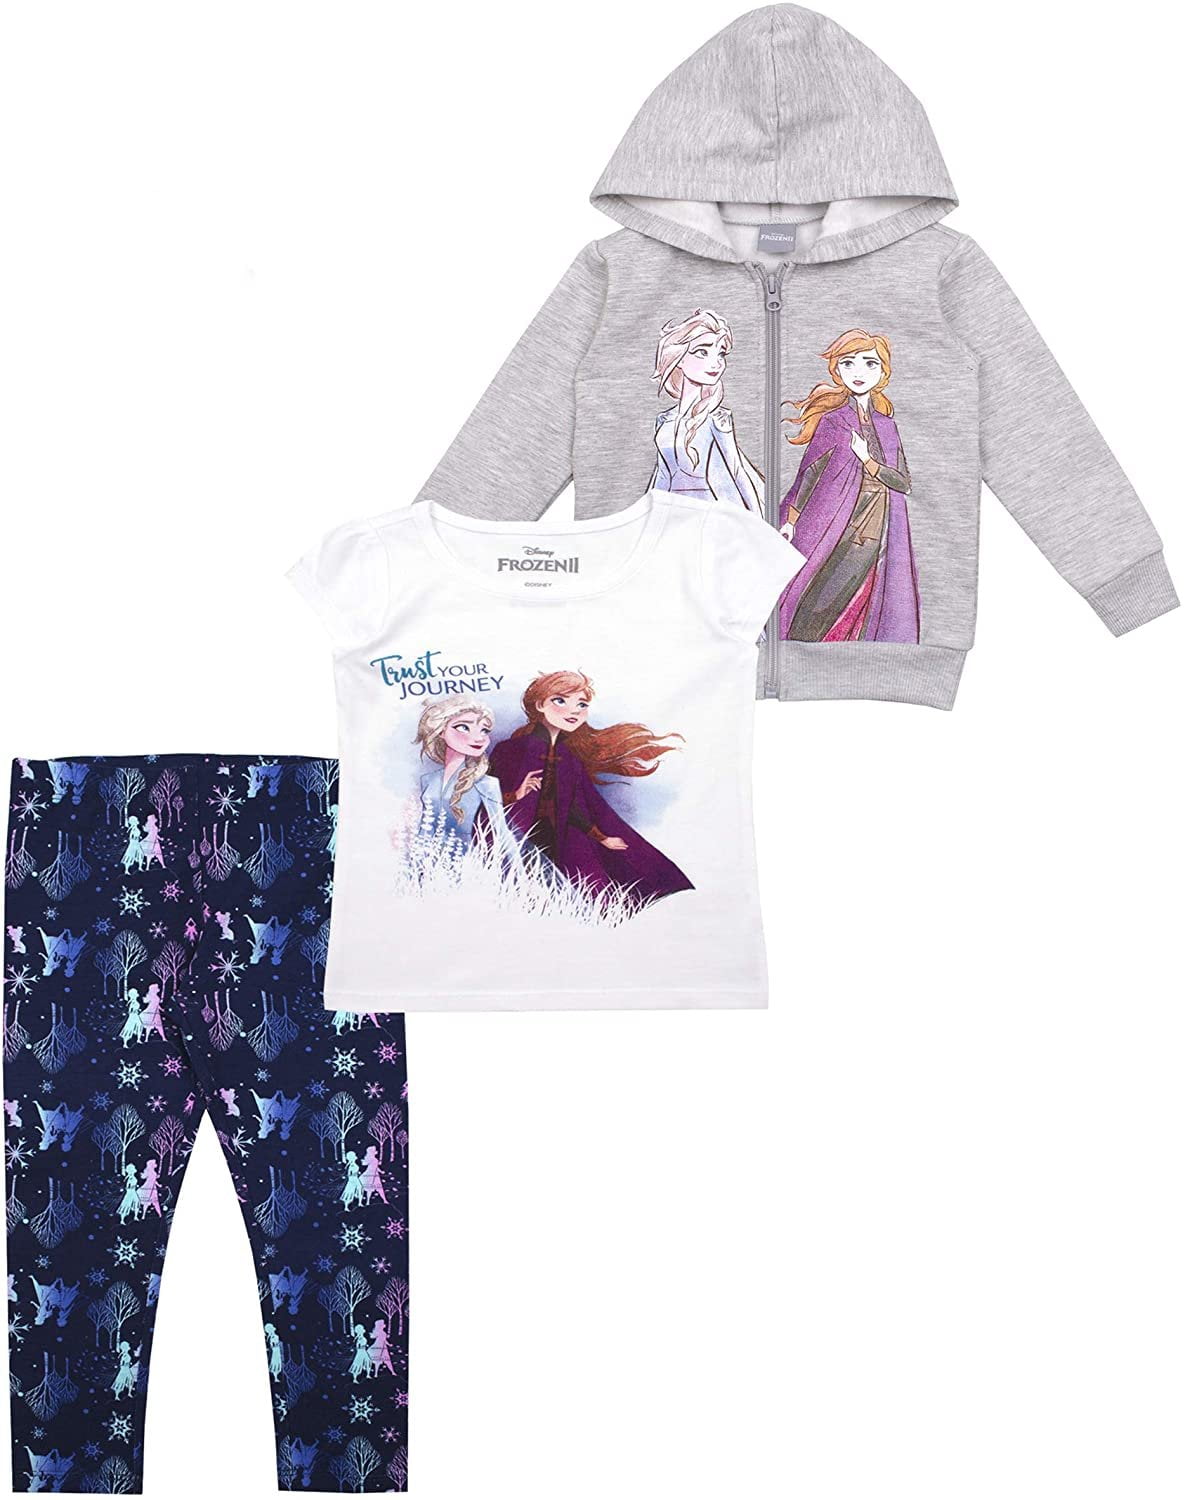 Frozen Elsa Believe in the Journey Hooded Sweatshirt & Leggings Outfit New 4T 